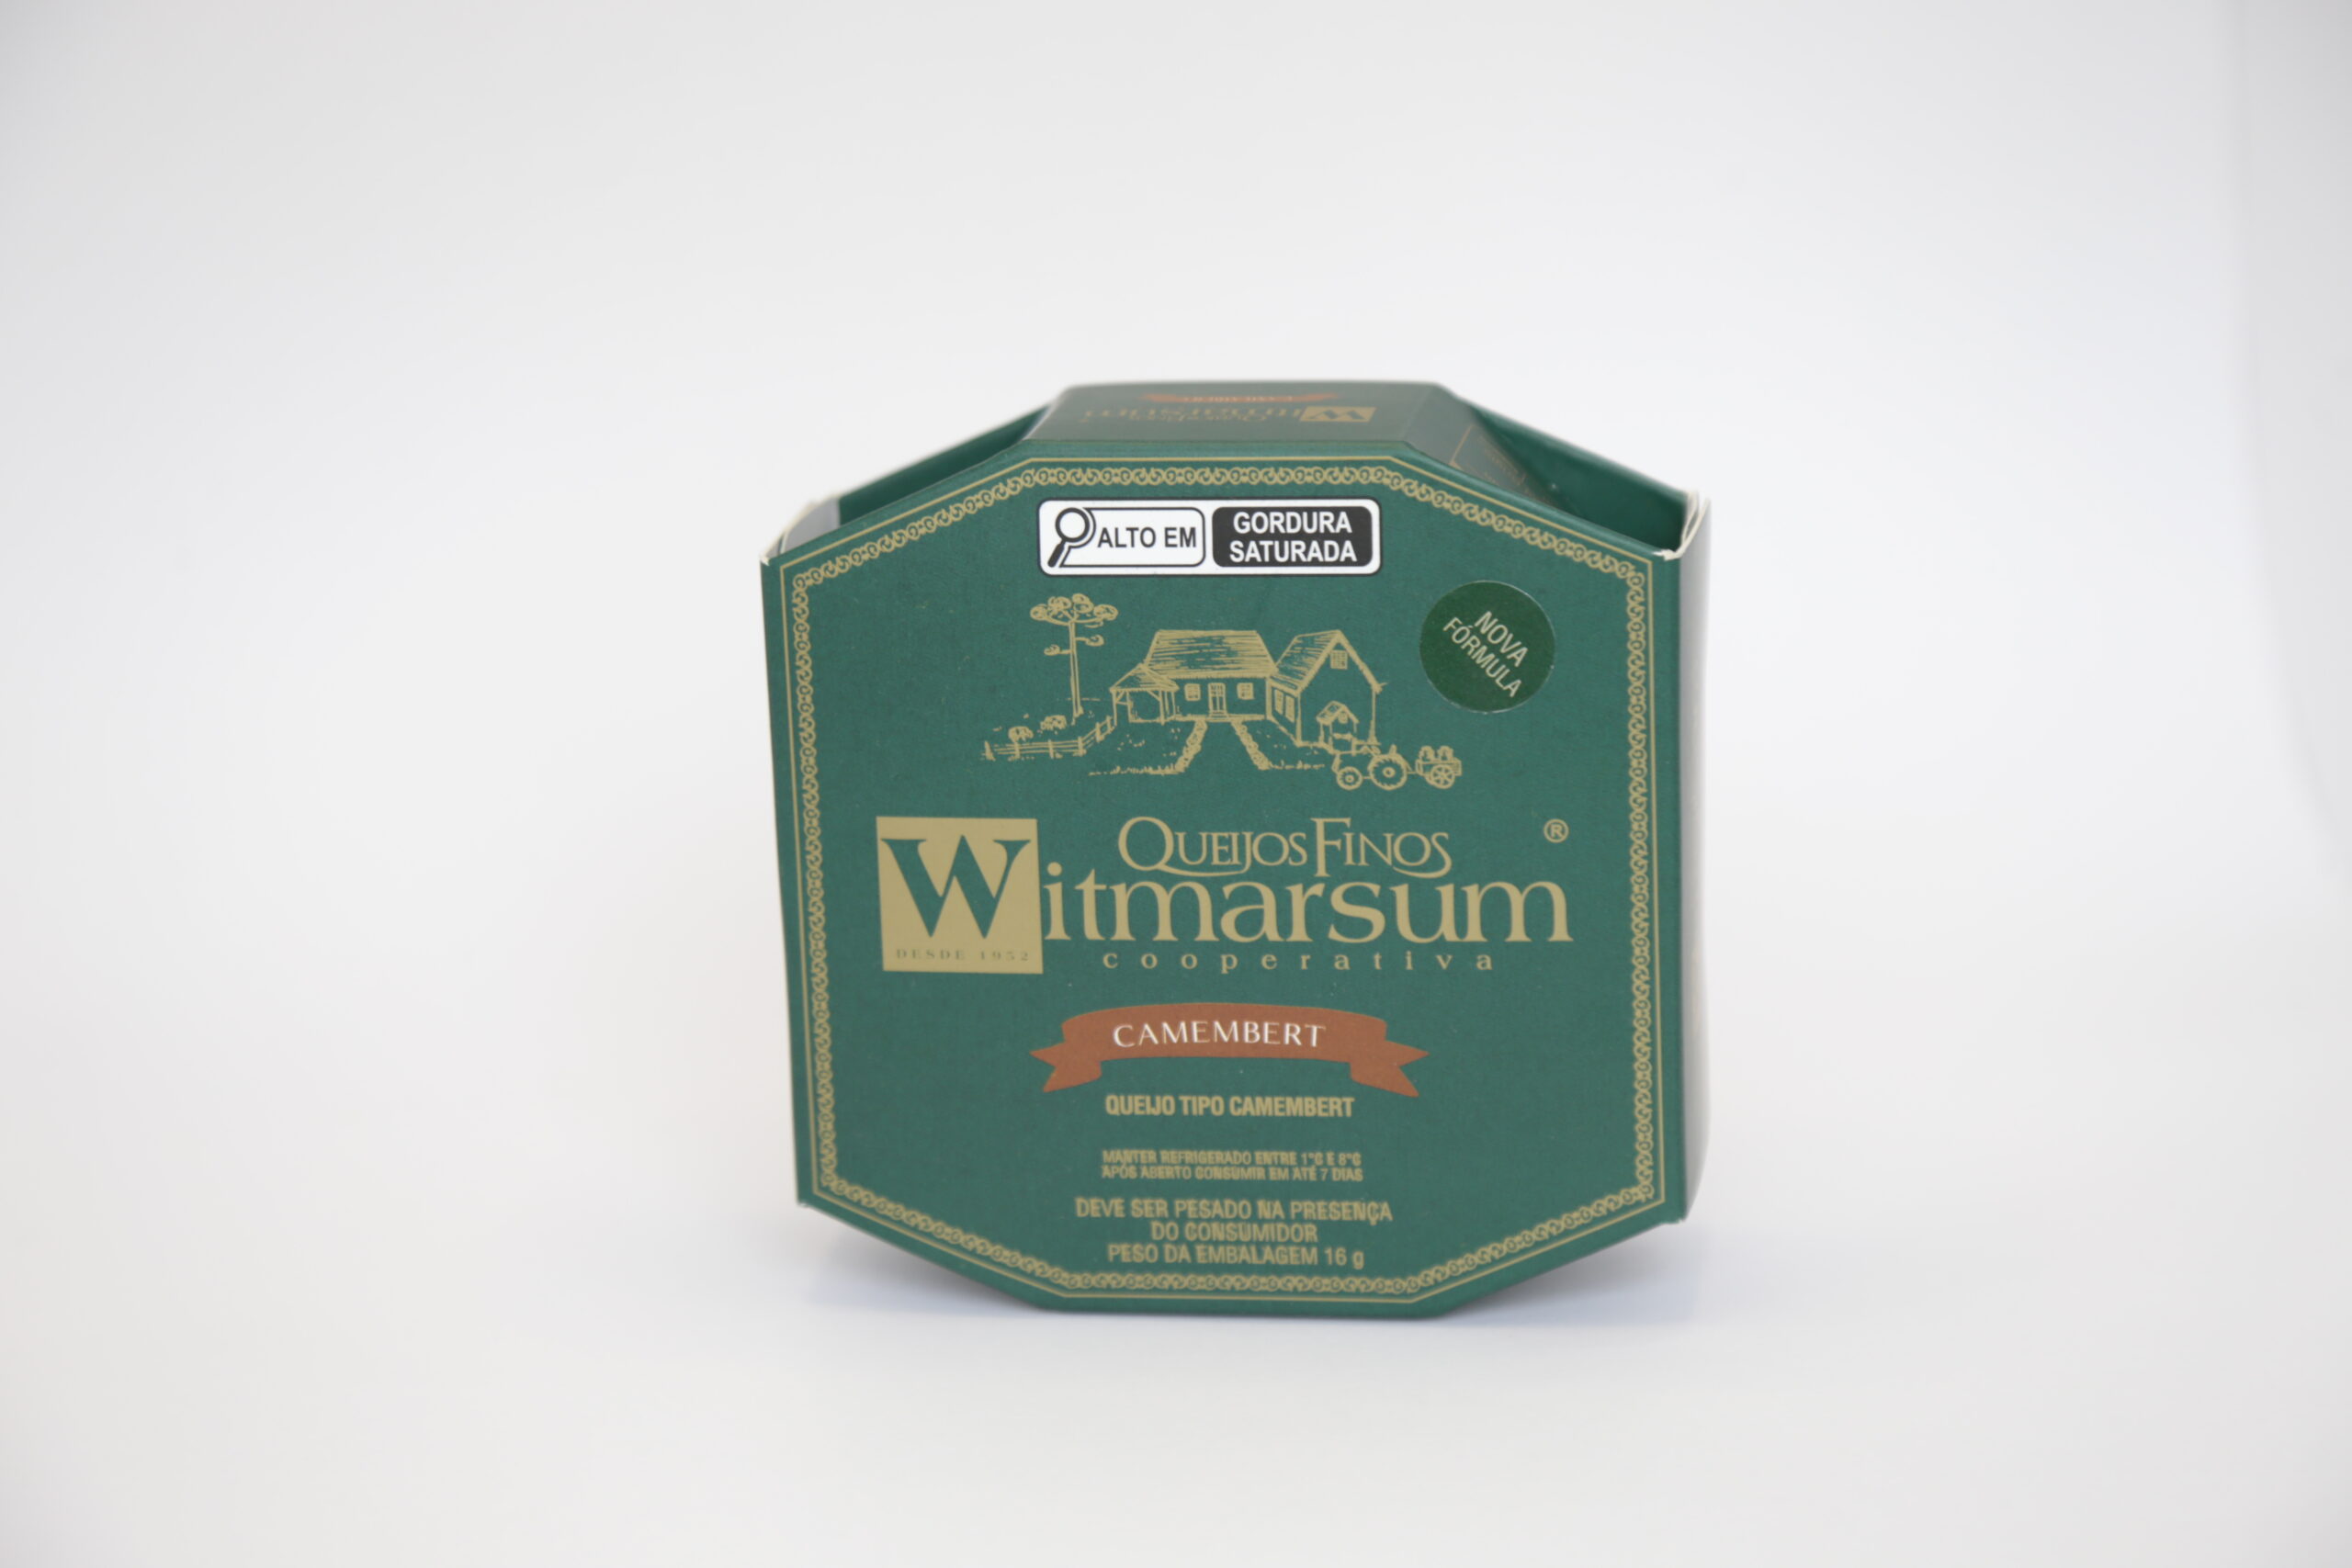 Para celebrar 71 anos de fundação,Cooperativa Witmarsum inicia relançamento de embalagens de seus queijos finos